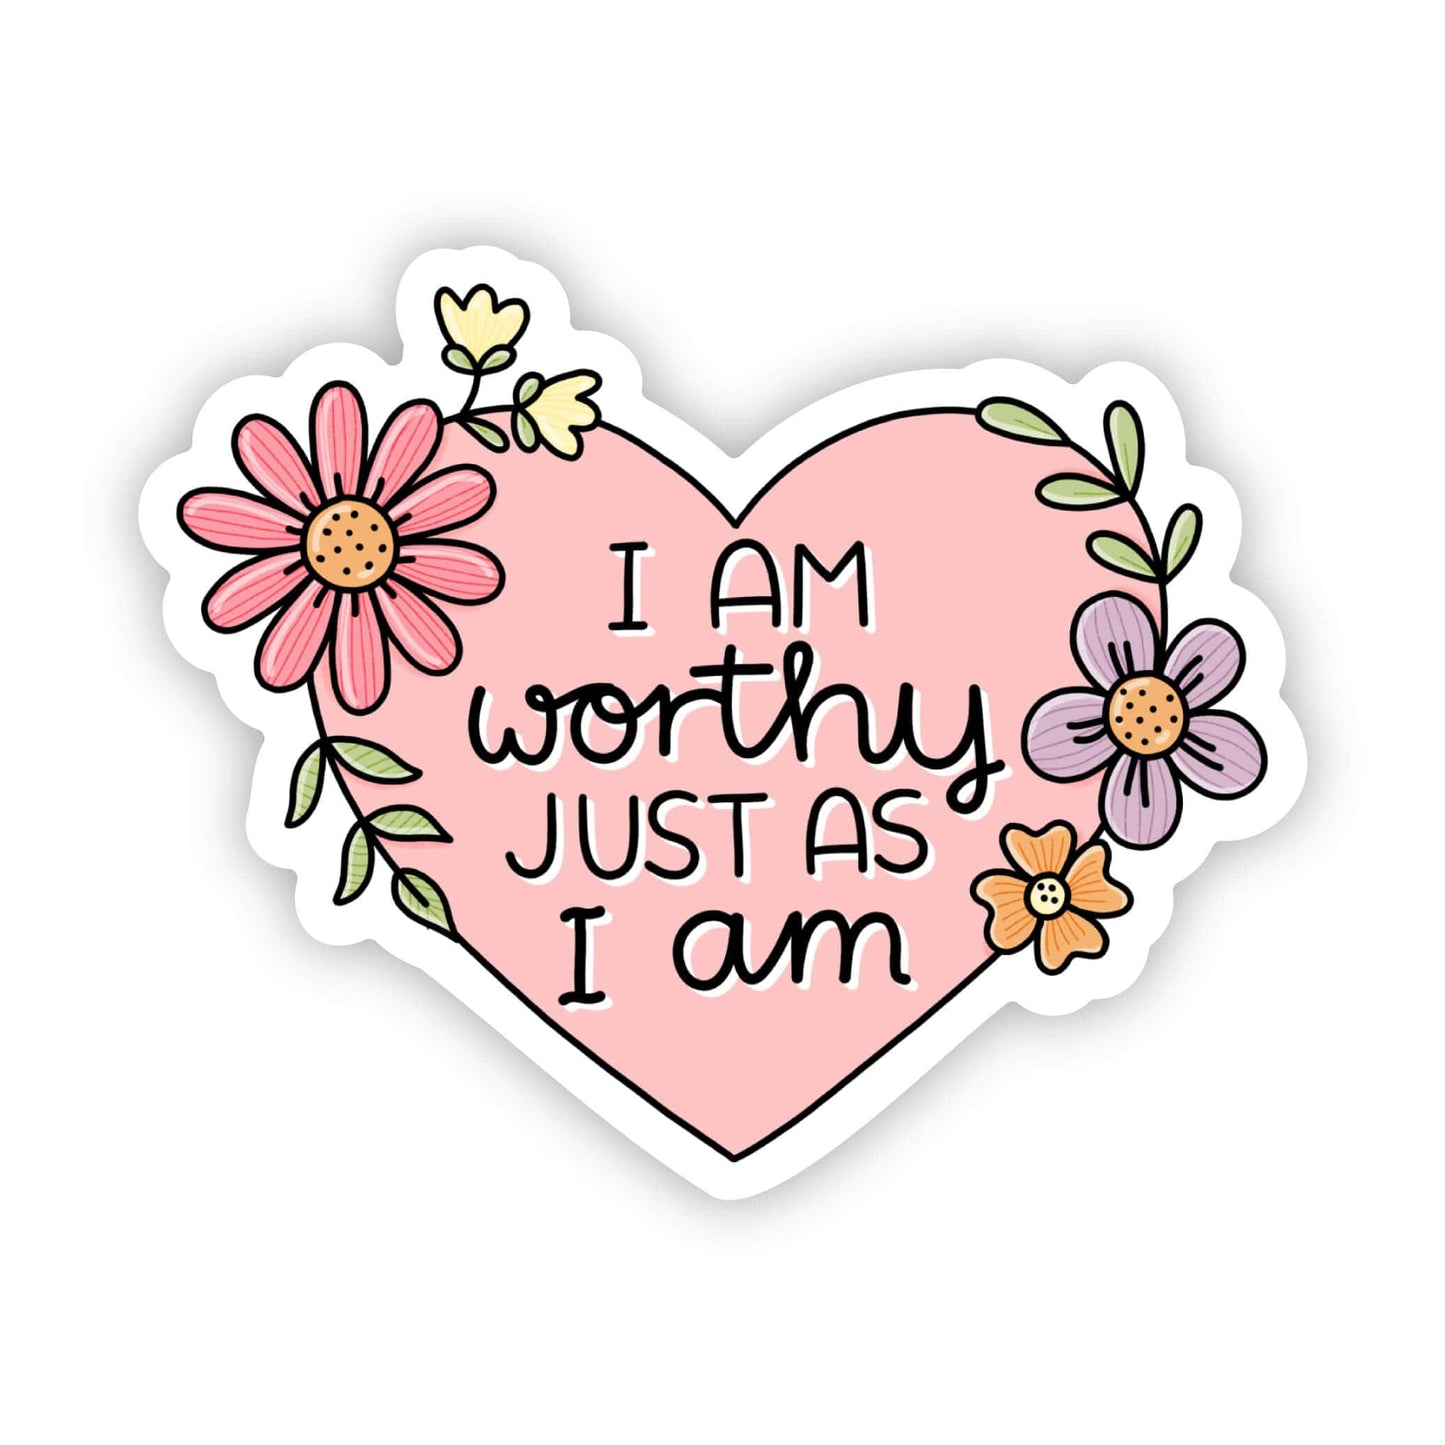 I am worthy just as I am